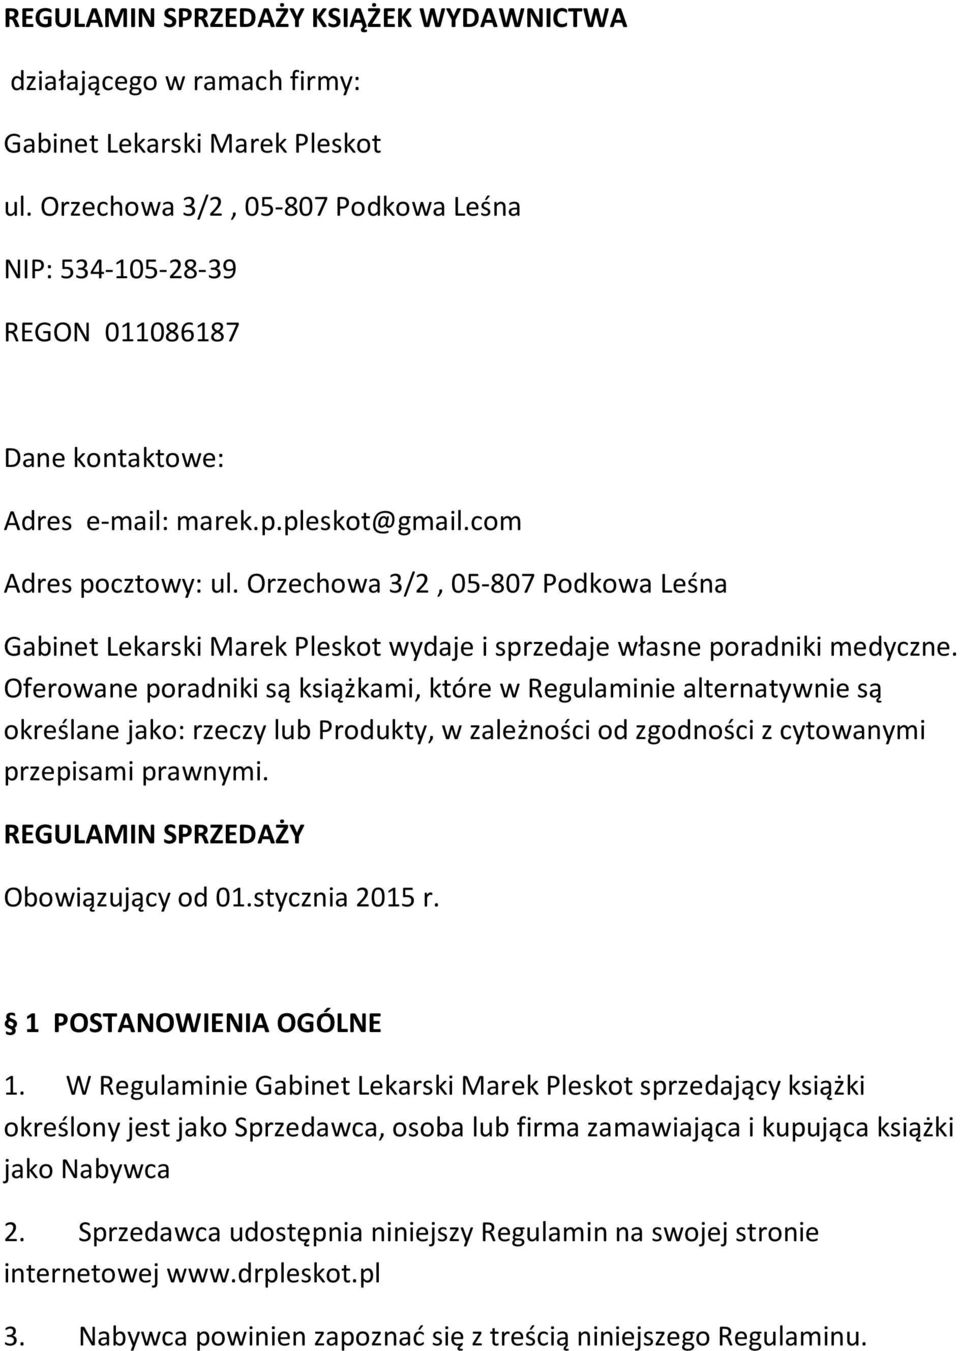 Orzechowa 3/2, 05-807 Podkowa Leśna Gabinet Lekarski Marek Pleskot wydaje i sprzedaje własne poradniki medyczne.